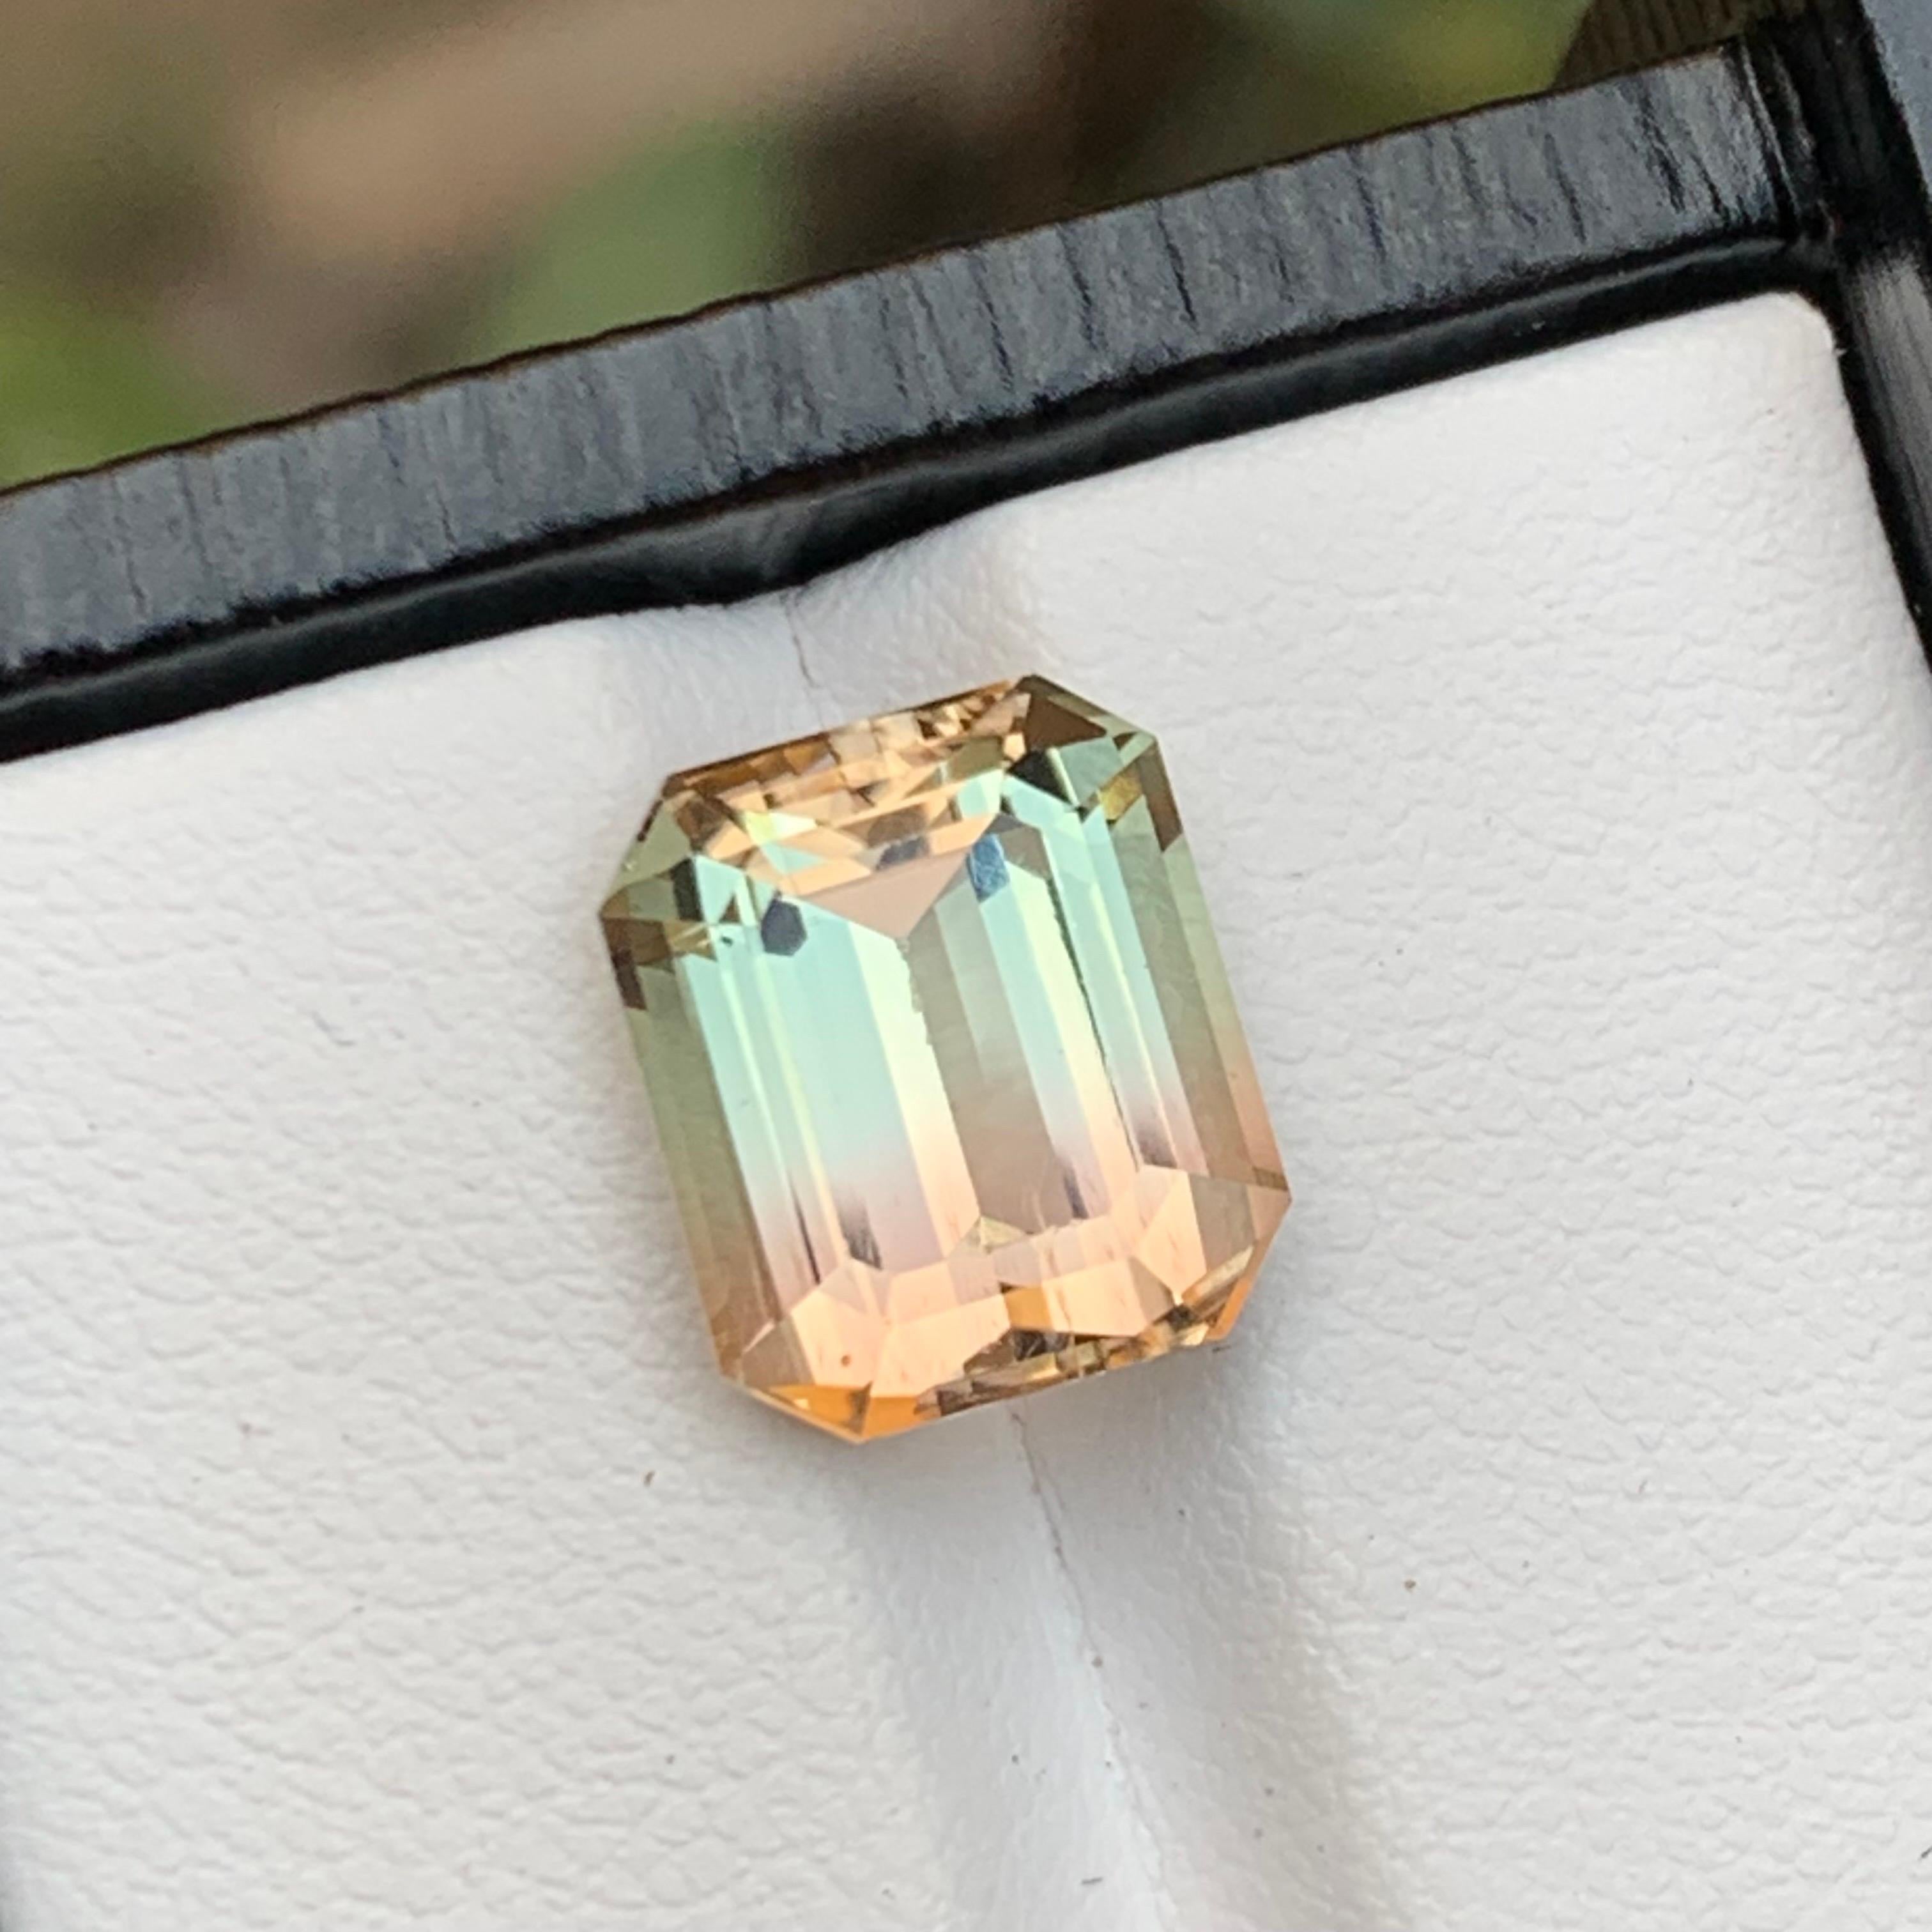 Emerald Cut Rare Bicolor Natural Tourmaline Loose Gemstone, 5.80 Carat-Emerald/Octagon Cut For Sale